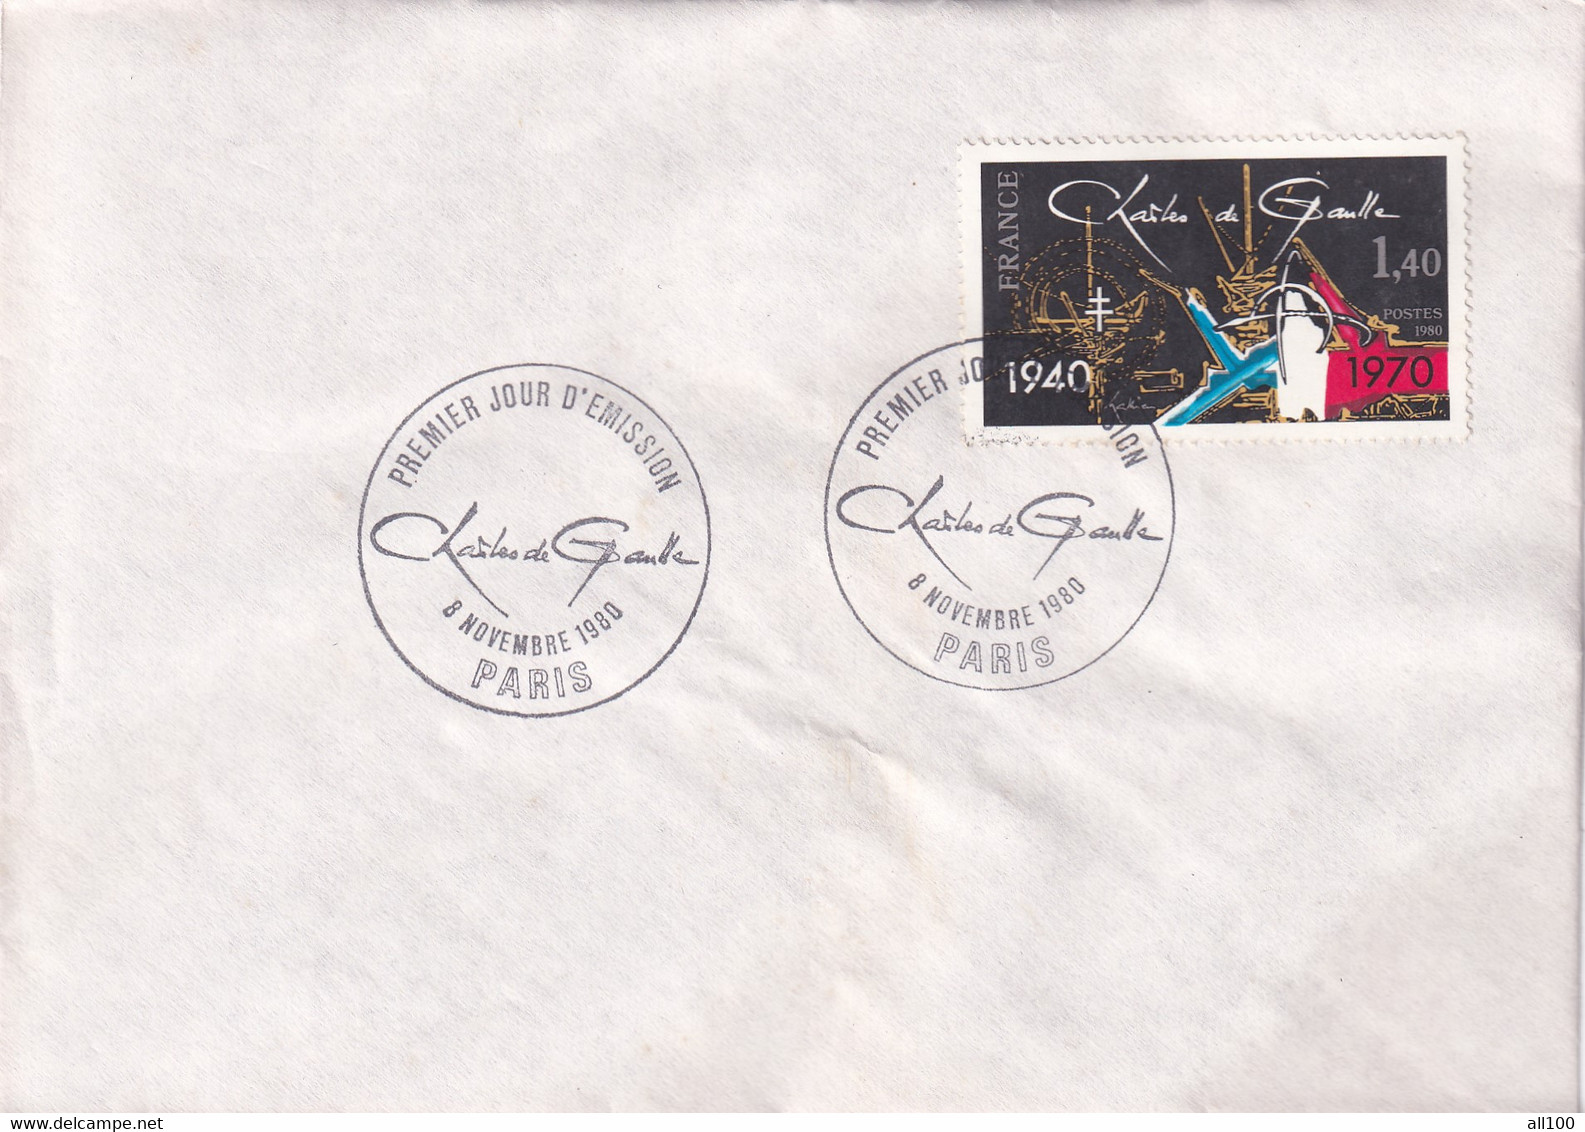 A21870 - Premier Jour D'Emission Charles De Gaulle Paris Cover Envelope Unused 1980 Stamp France - Brieven En Documenten